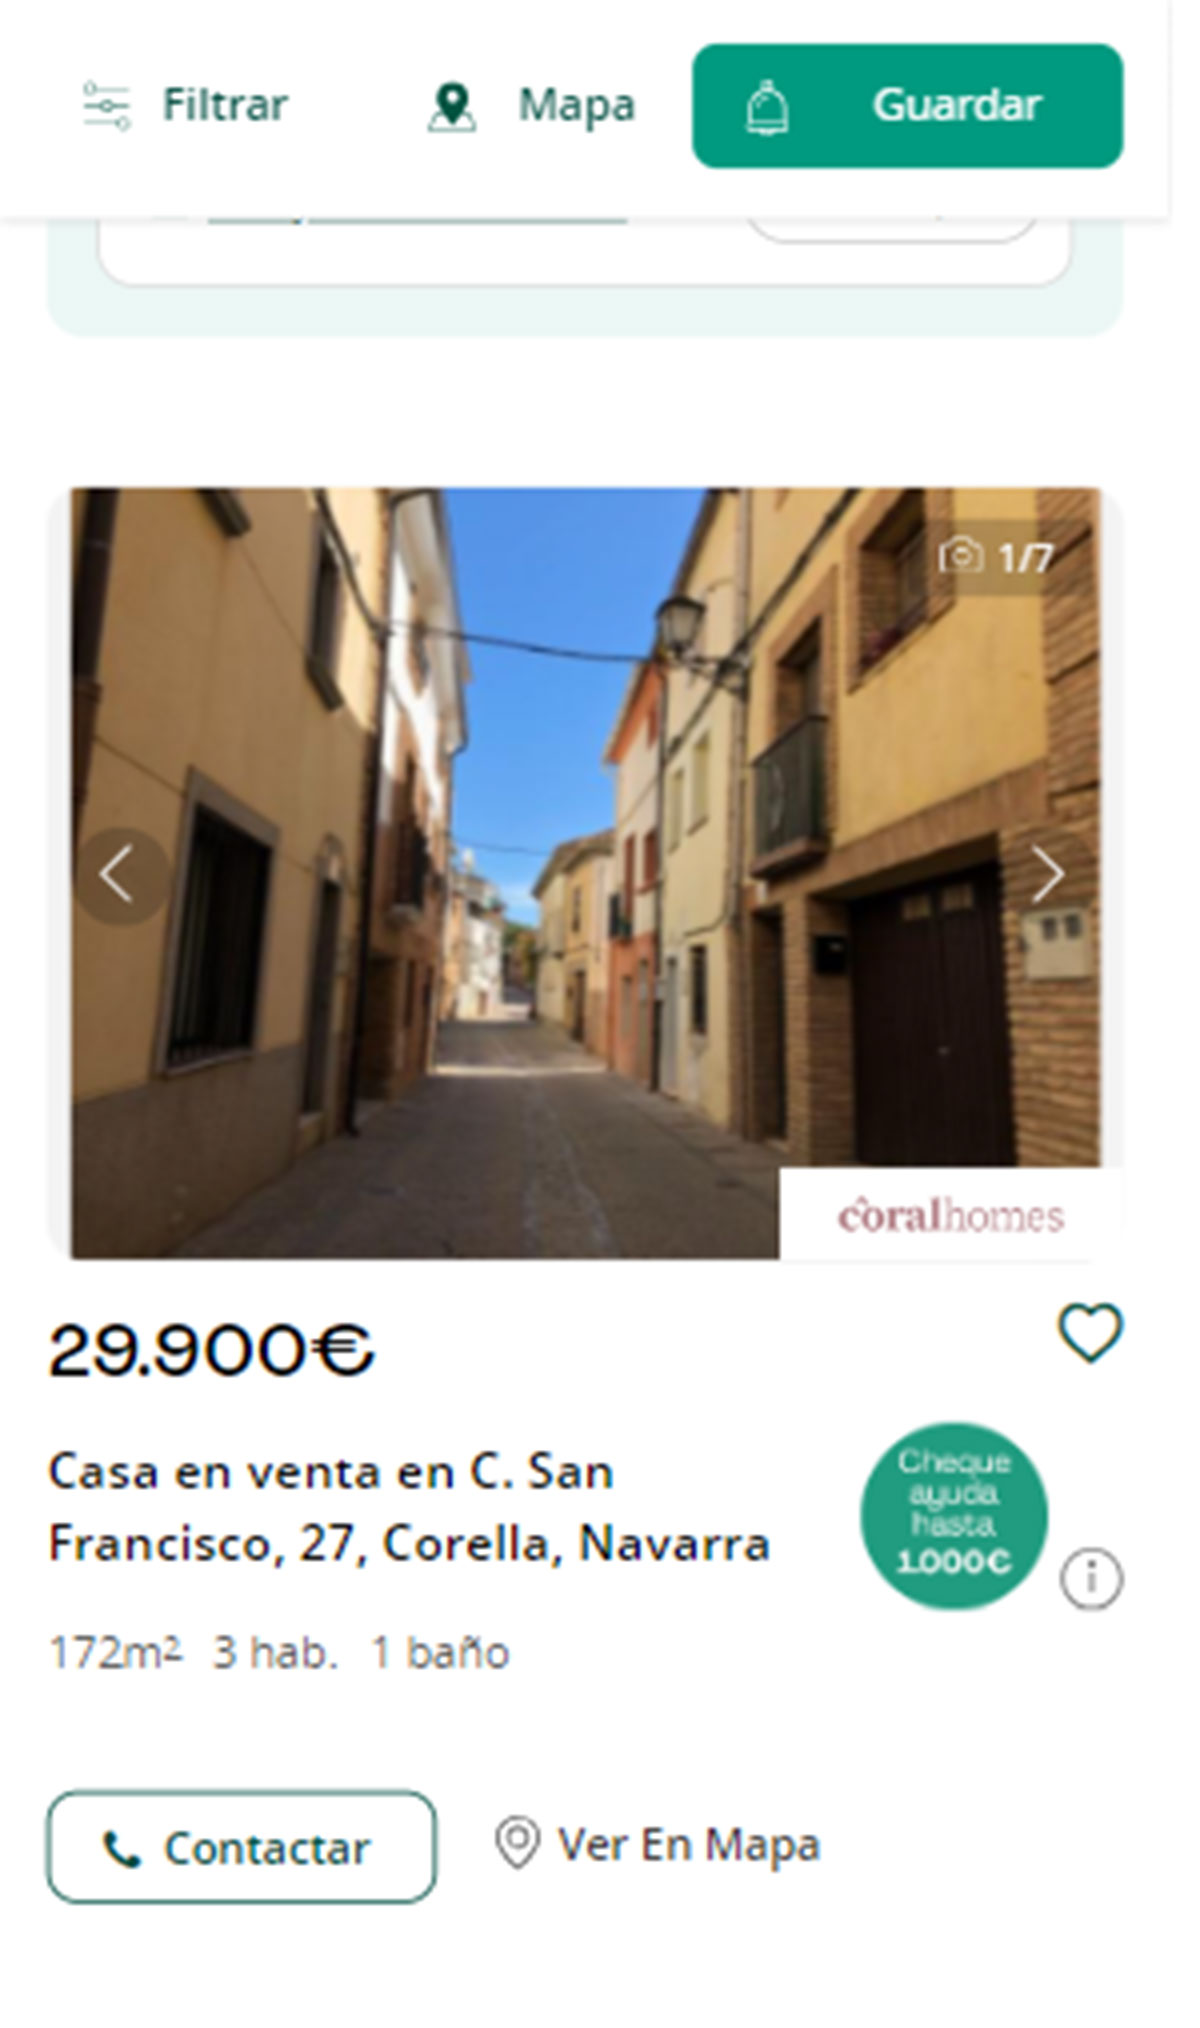 Piso en Navarra por 29.000 euros